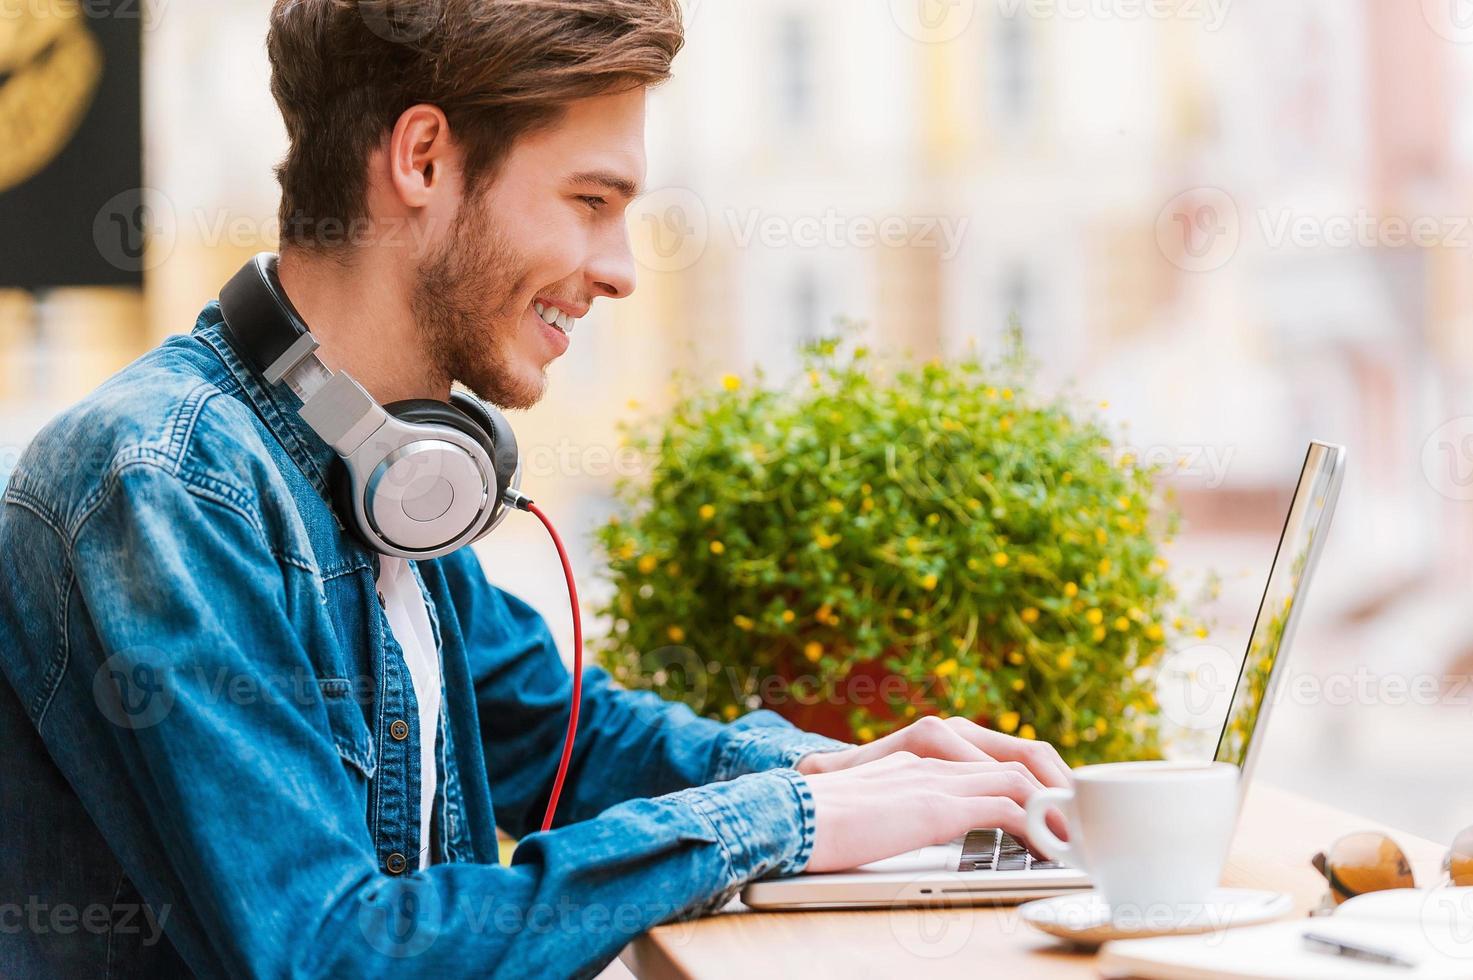 trabajando con placer. vista lateral de un joven sonriente que trabaja en una laptop mientras está sentado en un café en la acera foto